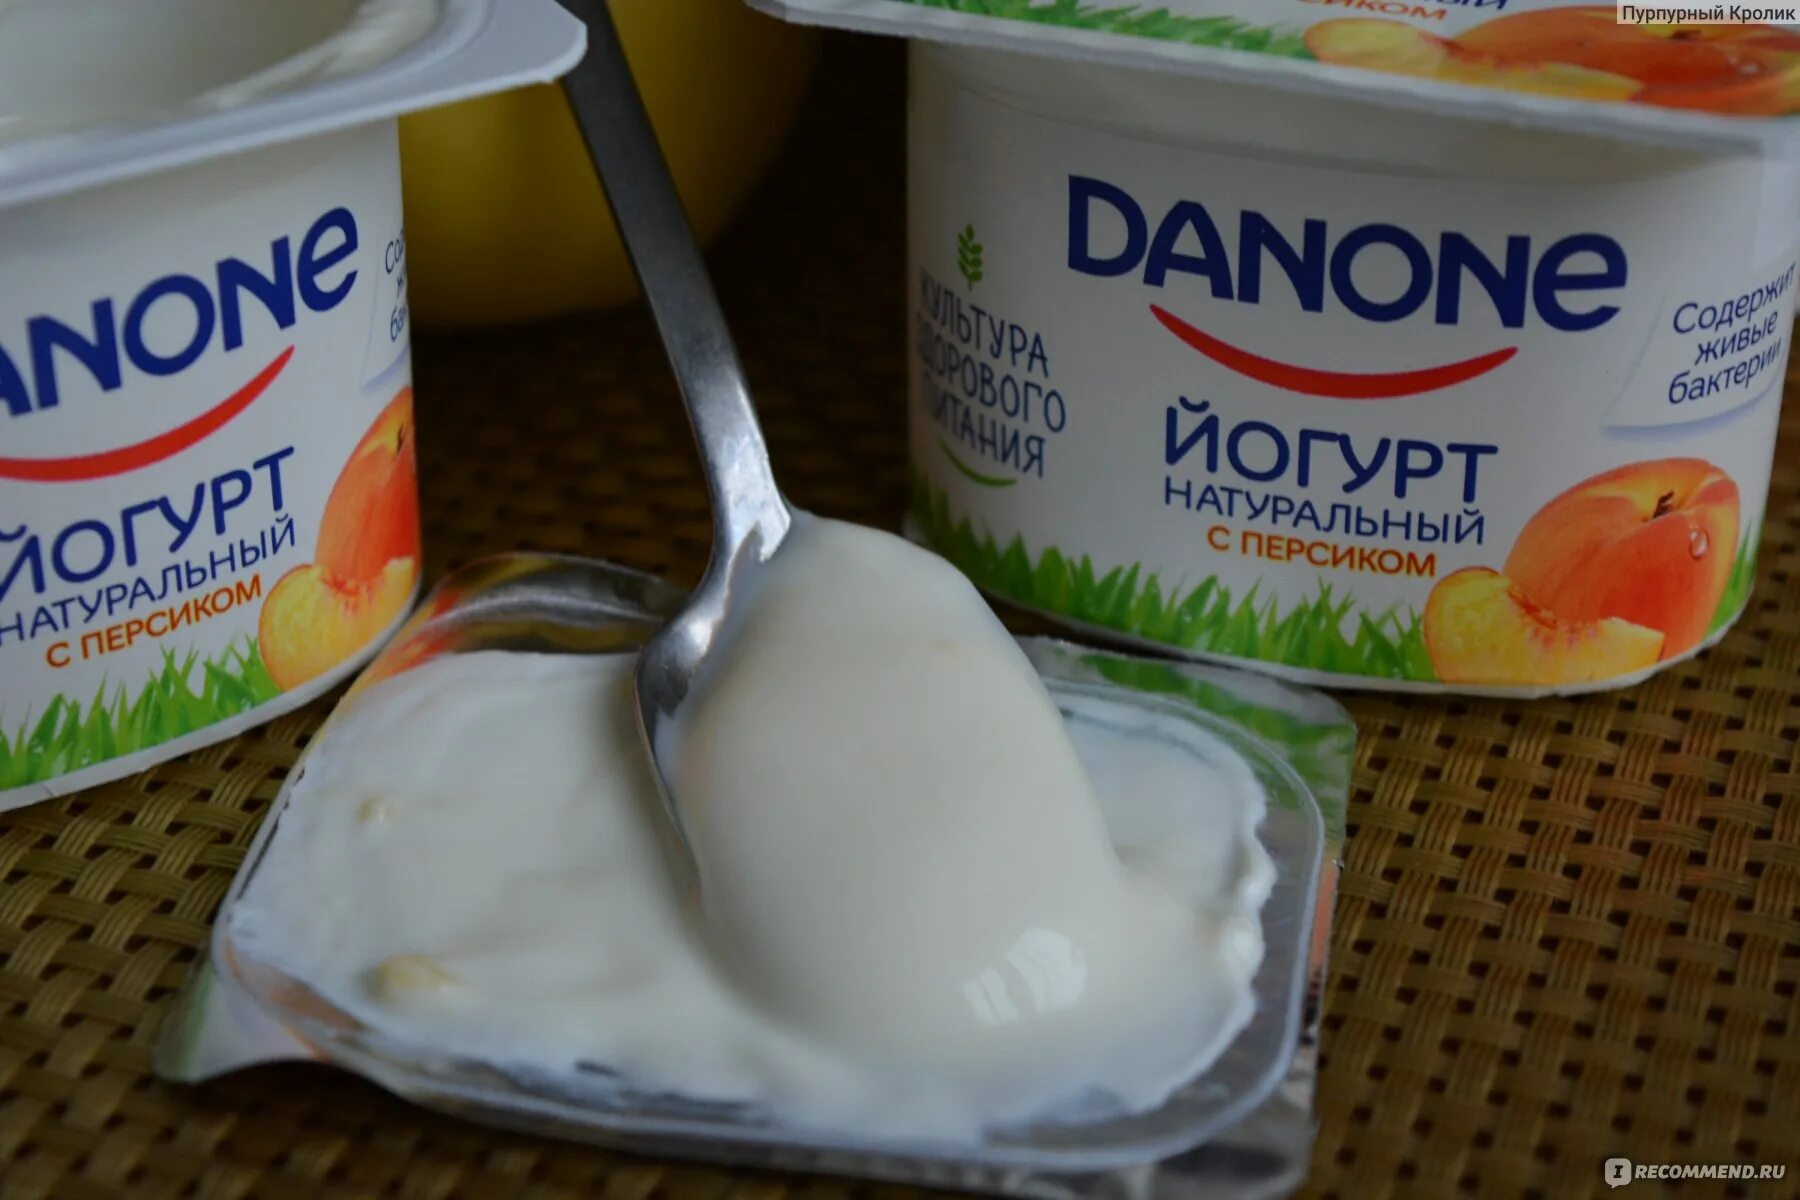 Йогурт Данон. Детские йогурты. Йогурты Данон детские. Йогурт со вкусом персика.